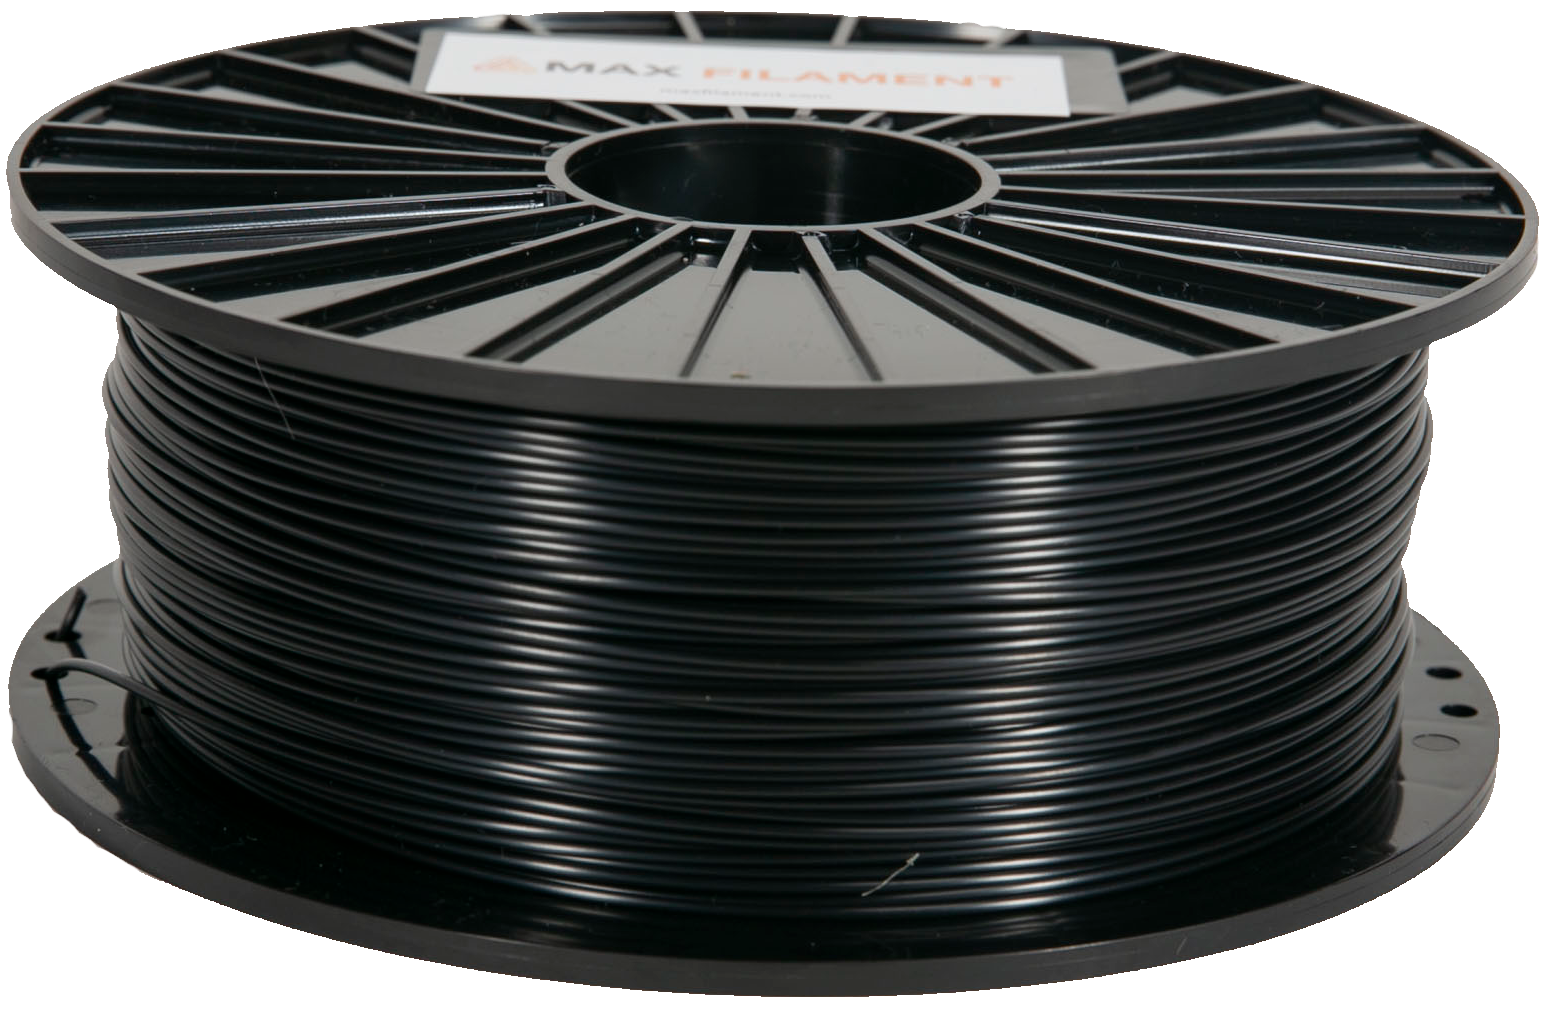 ASA Filaments - MAXFILAMENT - industrial grade filaments from Poland.